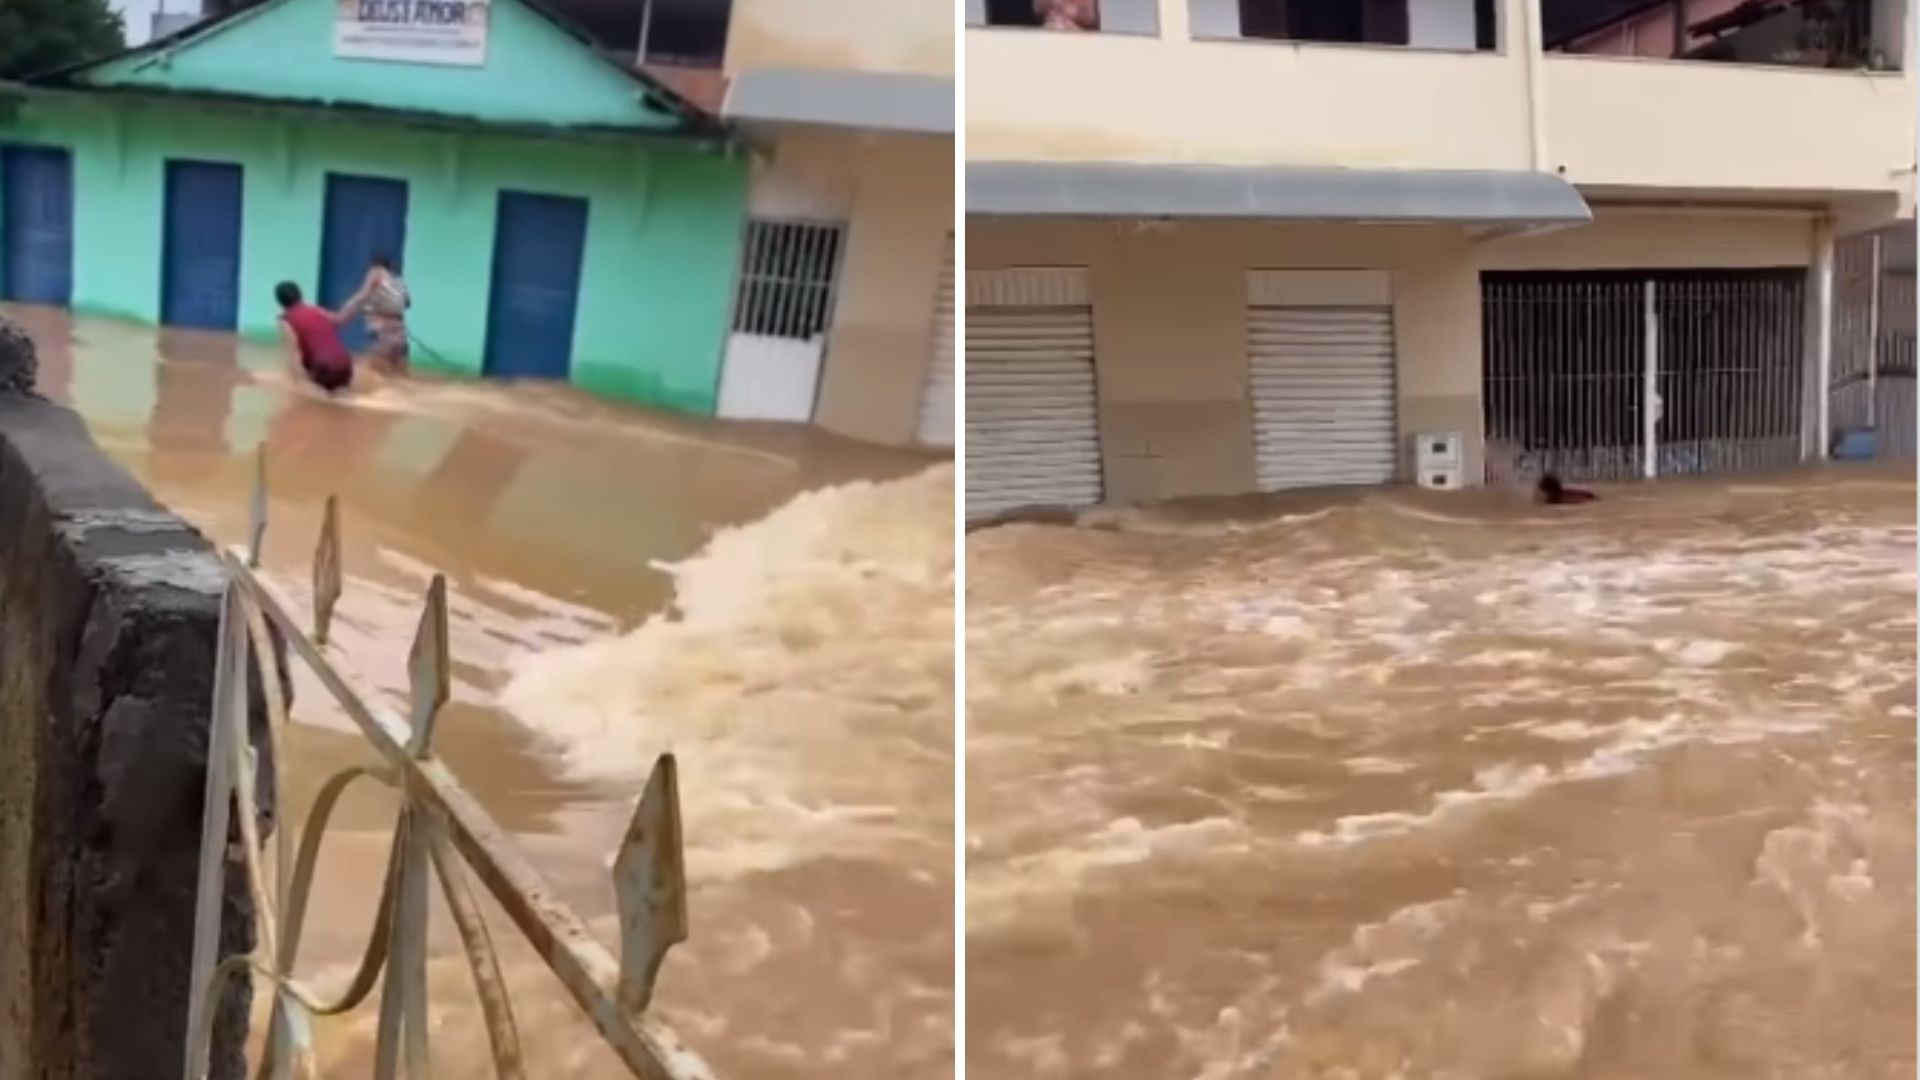 Imagens foram registradas na manhã deste sábado (23) em Pacotuba, uma das localidades mais afetadas no município do Sul do Espírito Santo